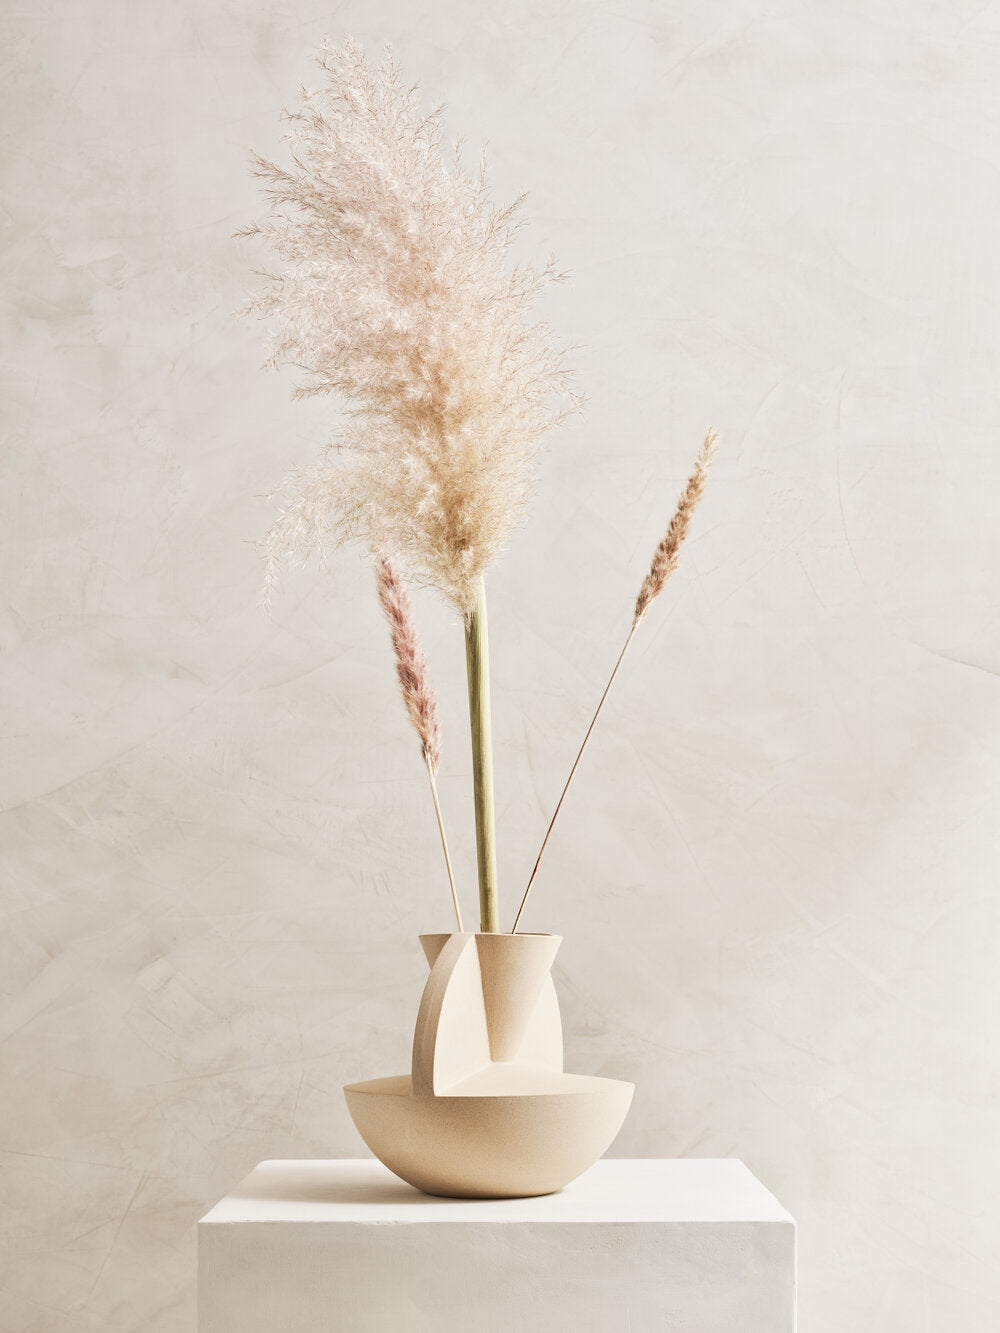 Vaso sculptural stoneware vase with Pampas grass